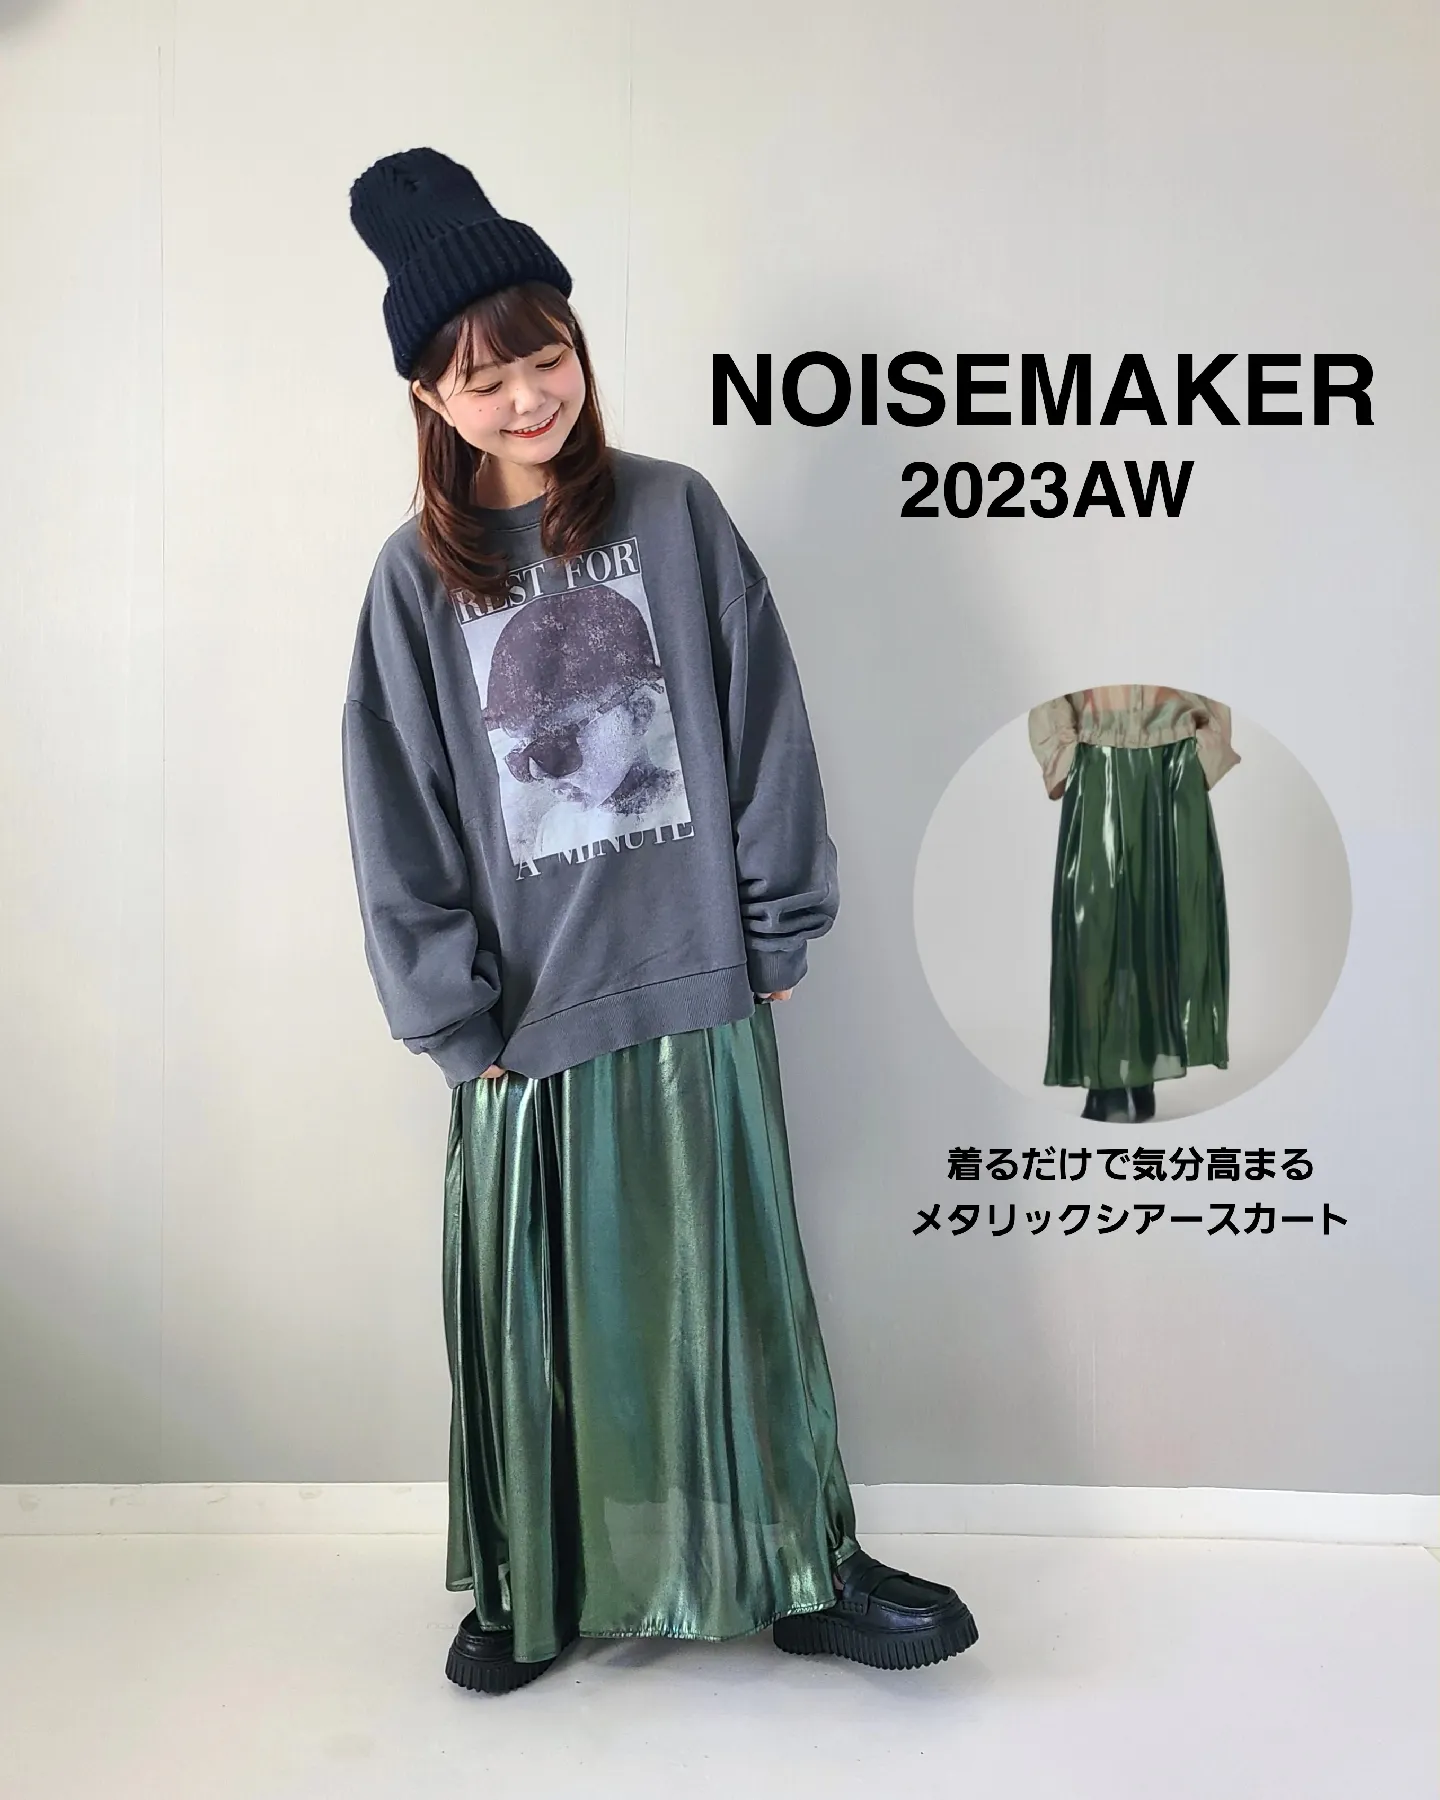 新品新作NOISE MAKER ノイズメーカーメタリックシアーボリュームスカート